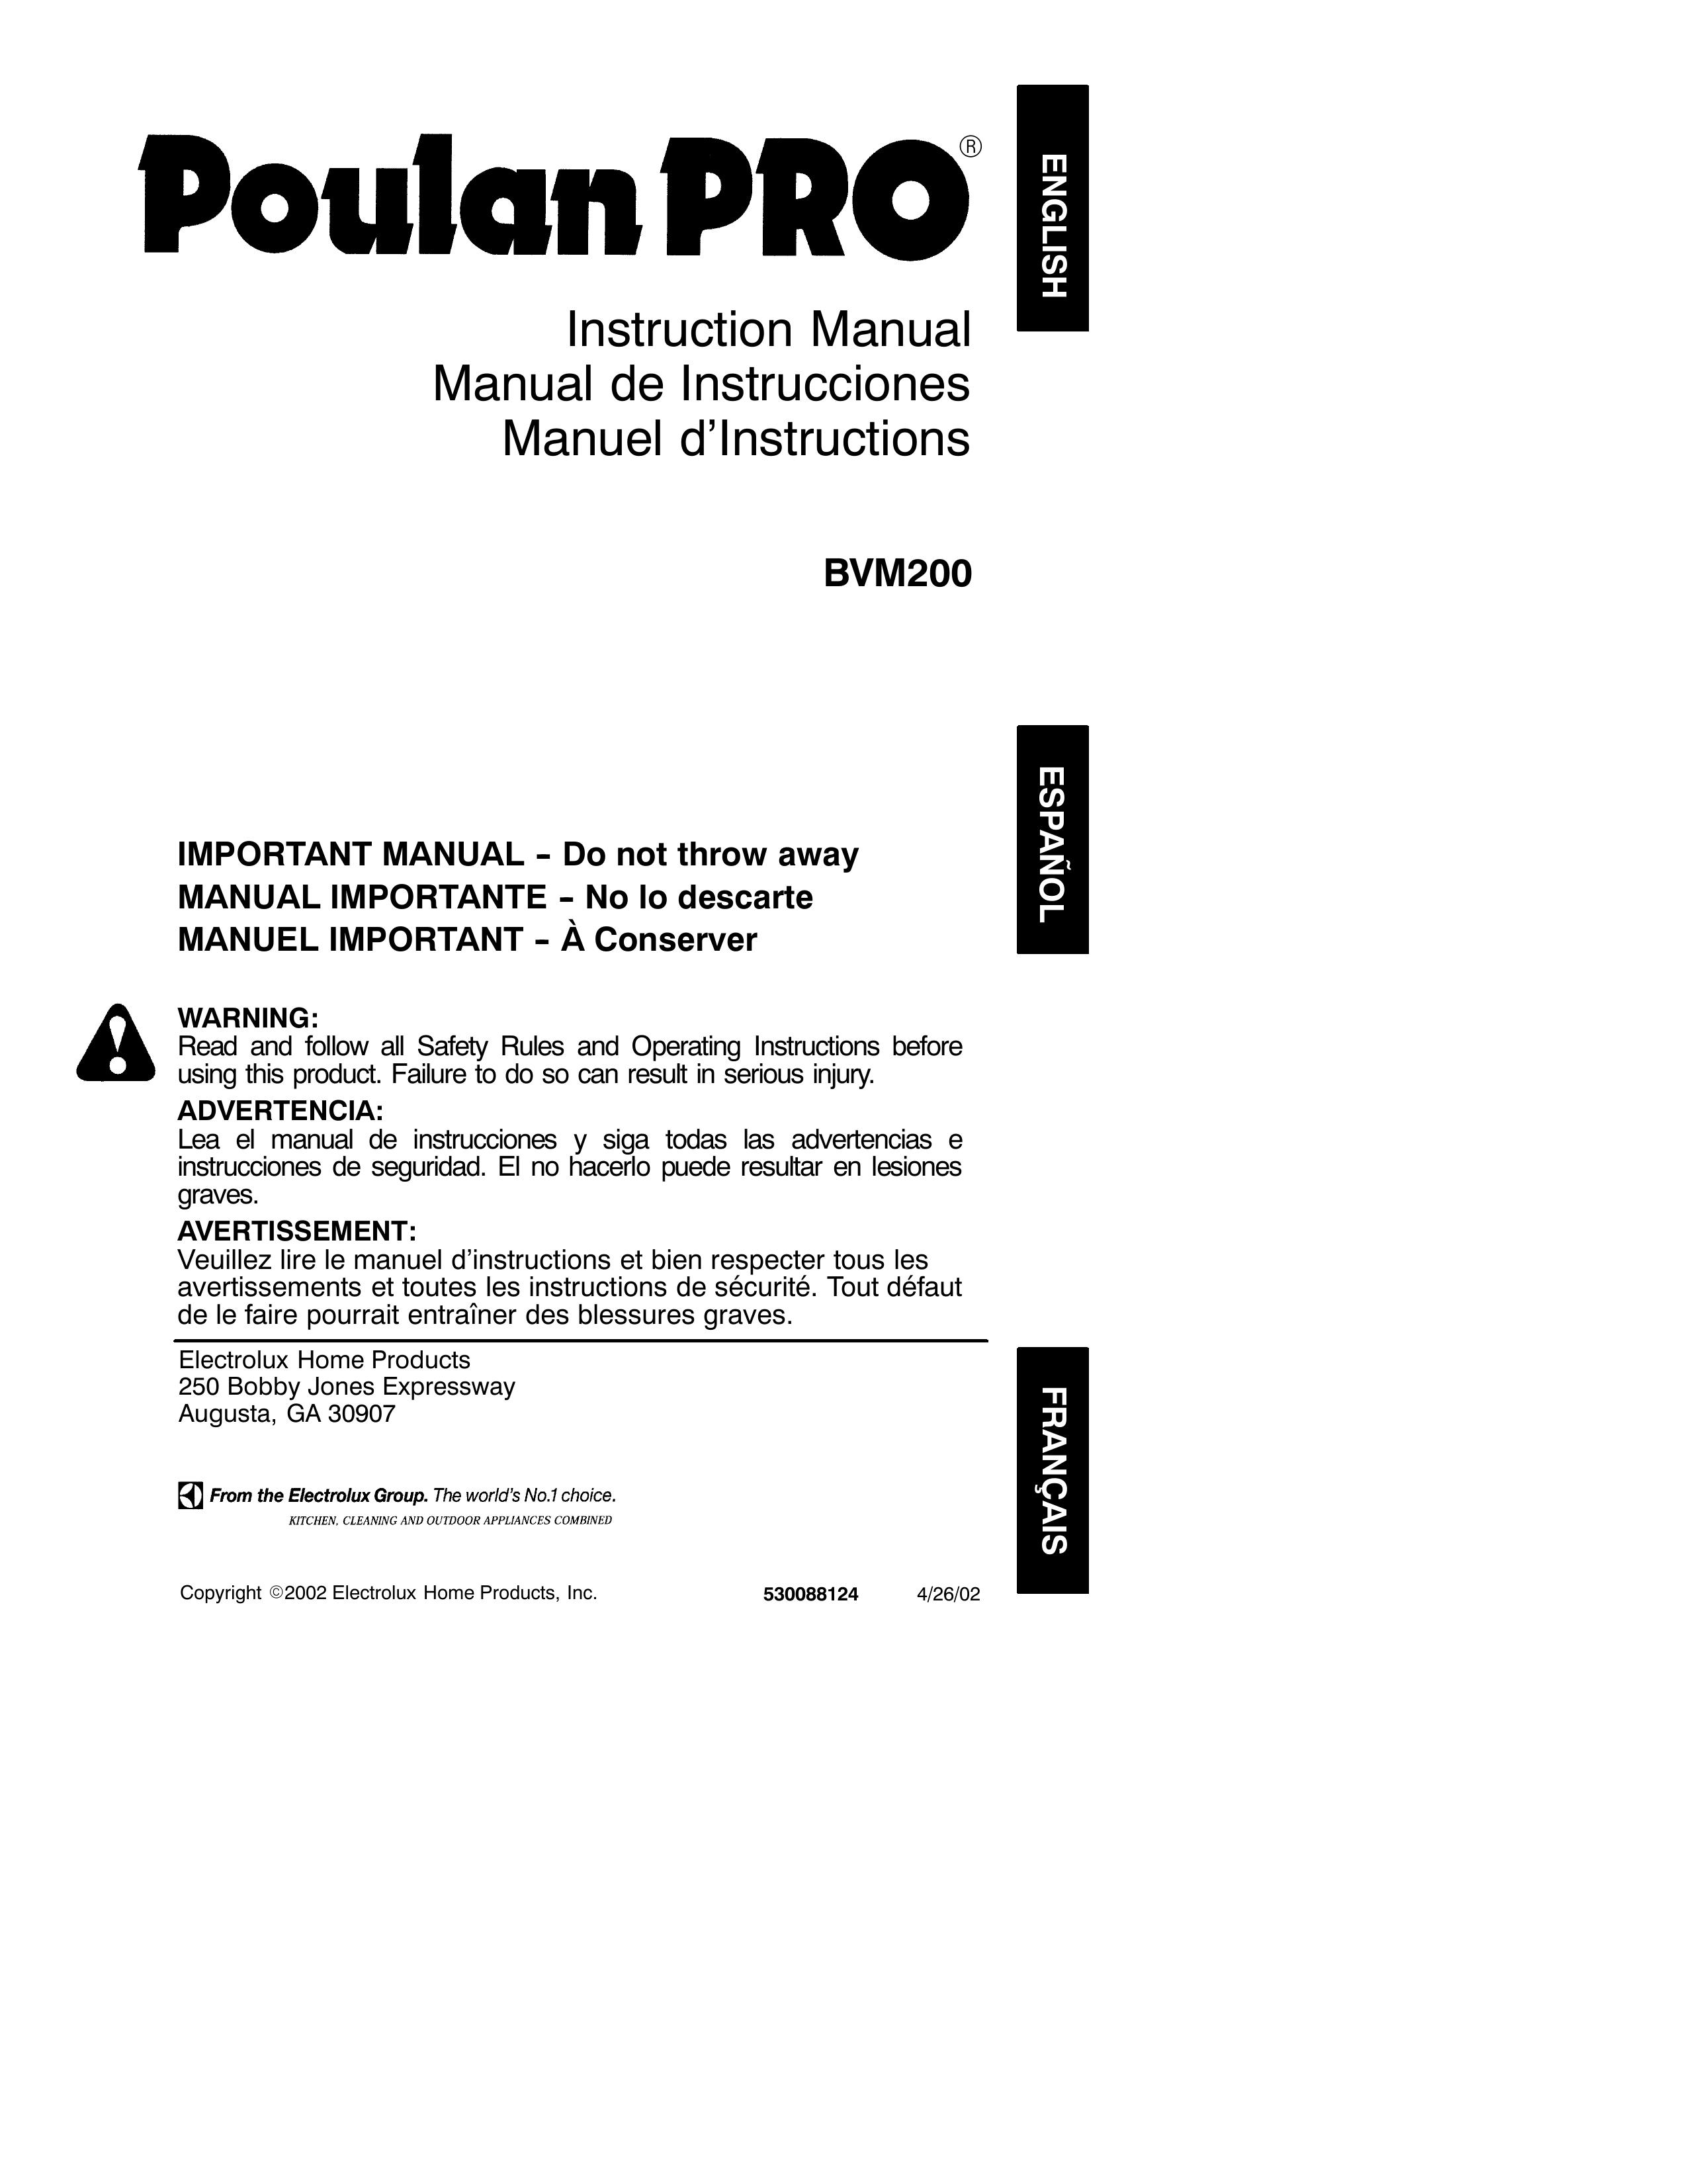 Poulan 530088124 Blower User Manual